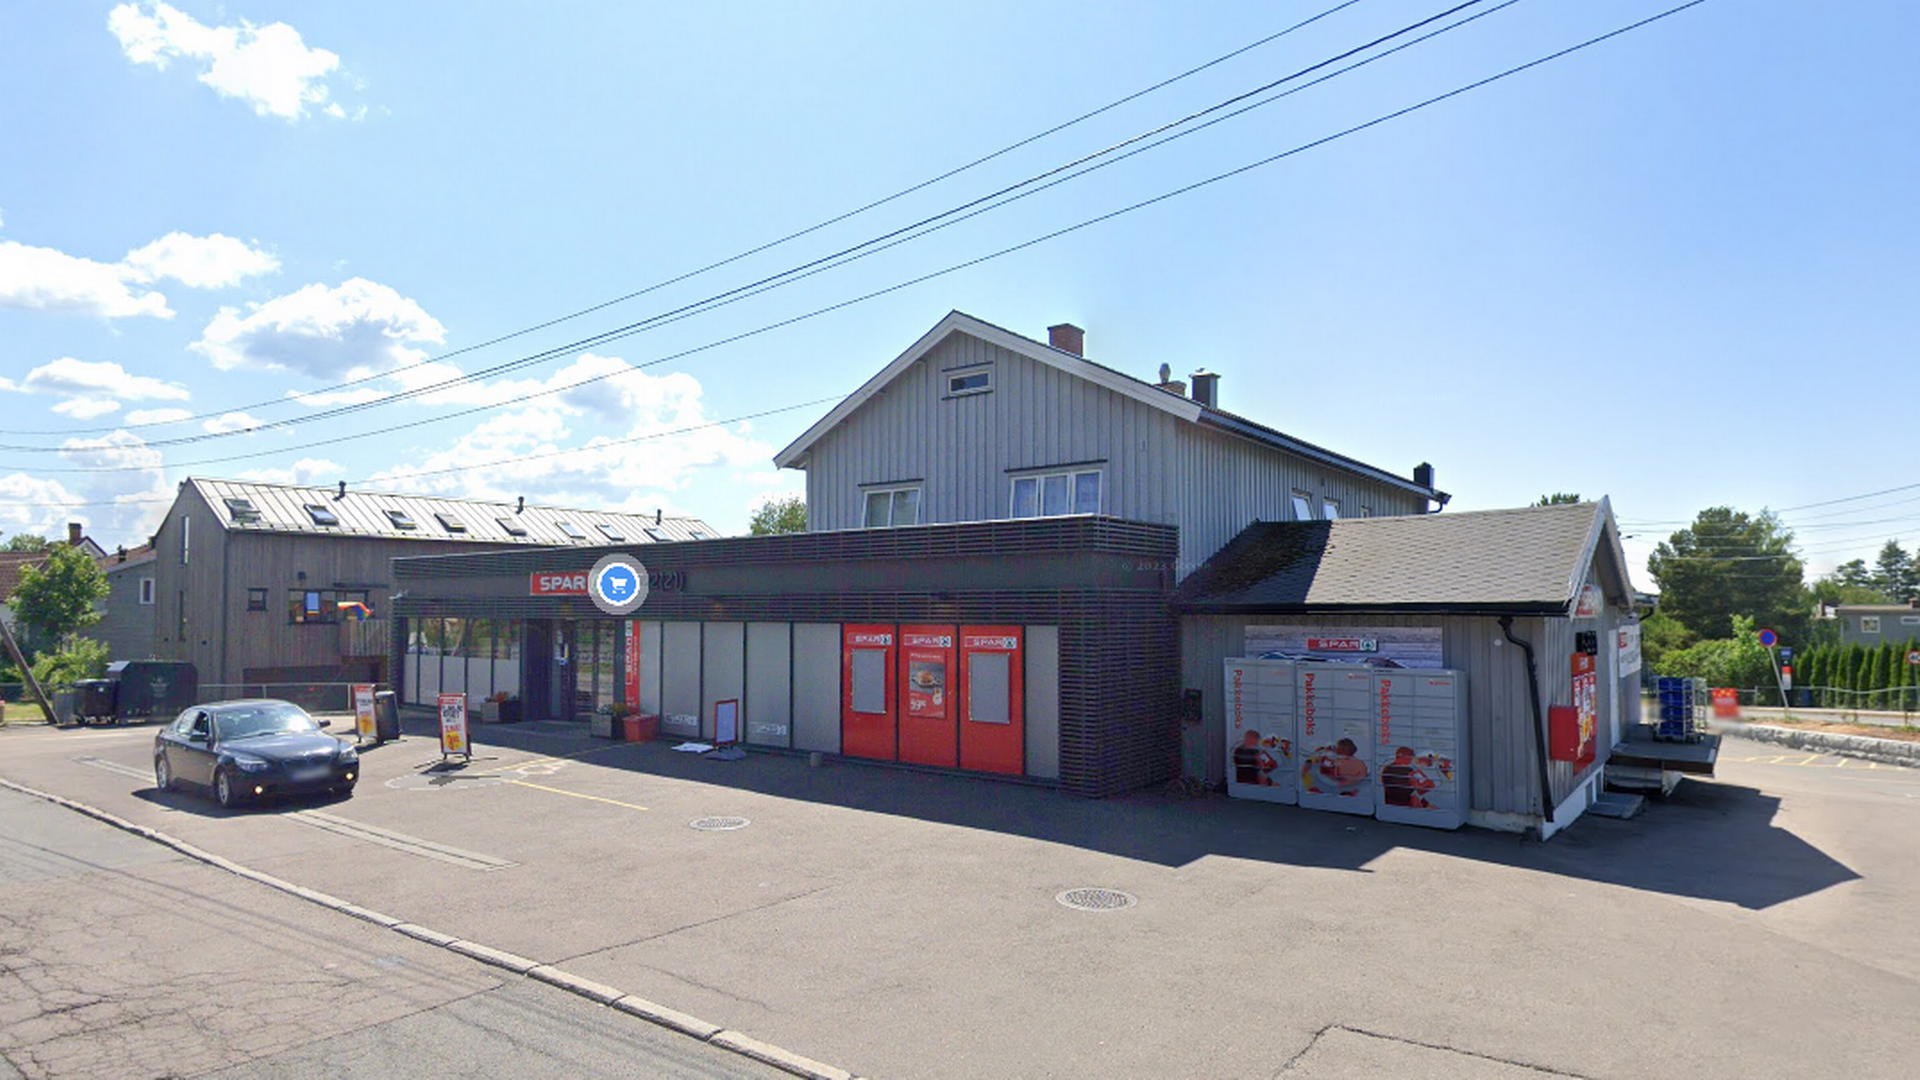 Coop Prix flytter inn i Spars gamle butikk på Stovner. | Foto: Google Street View